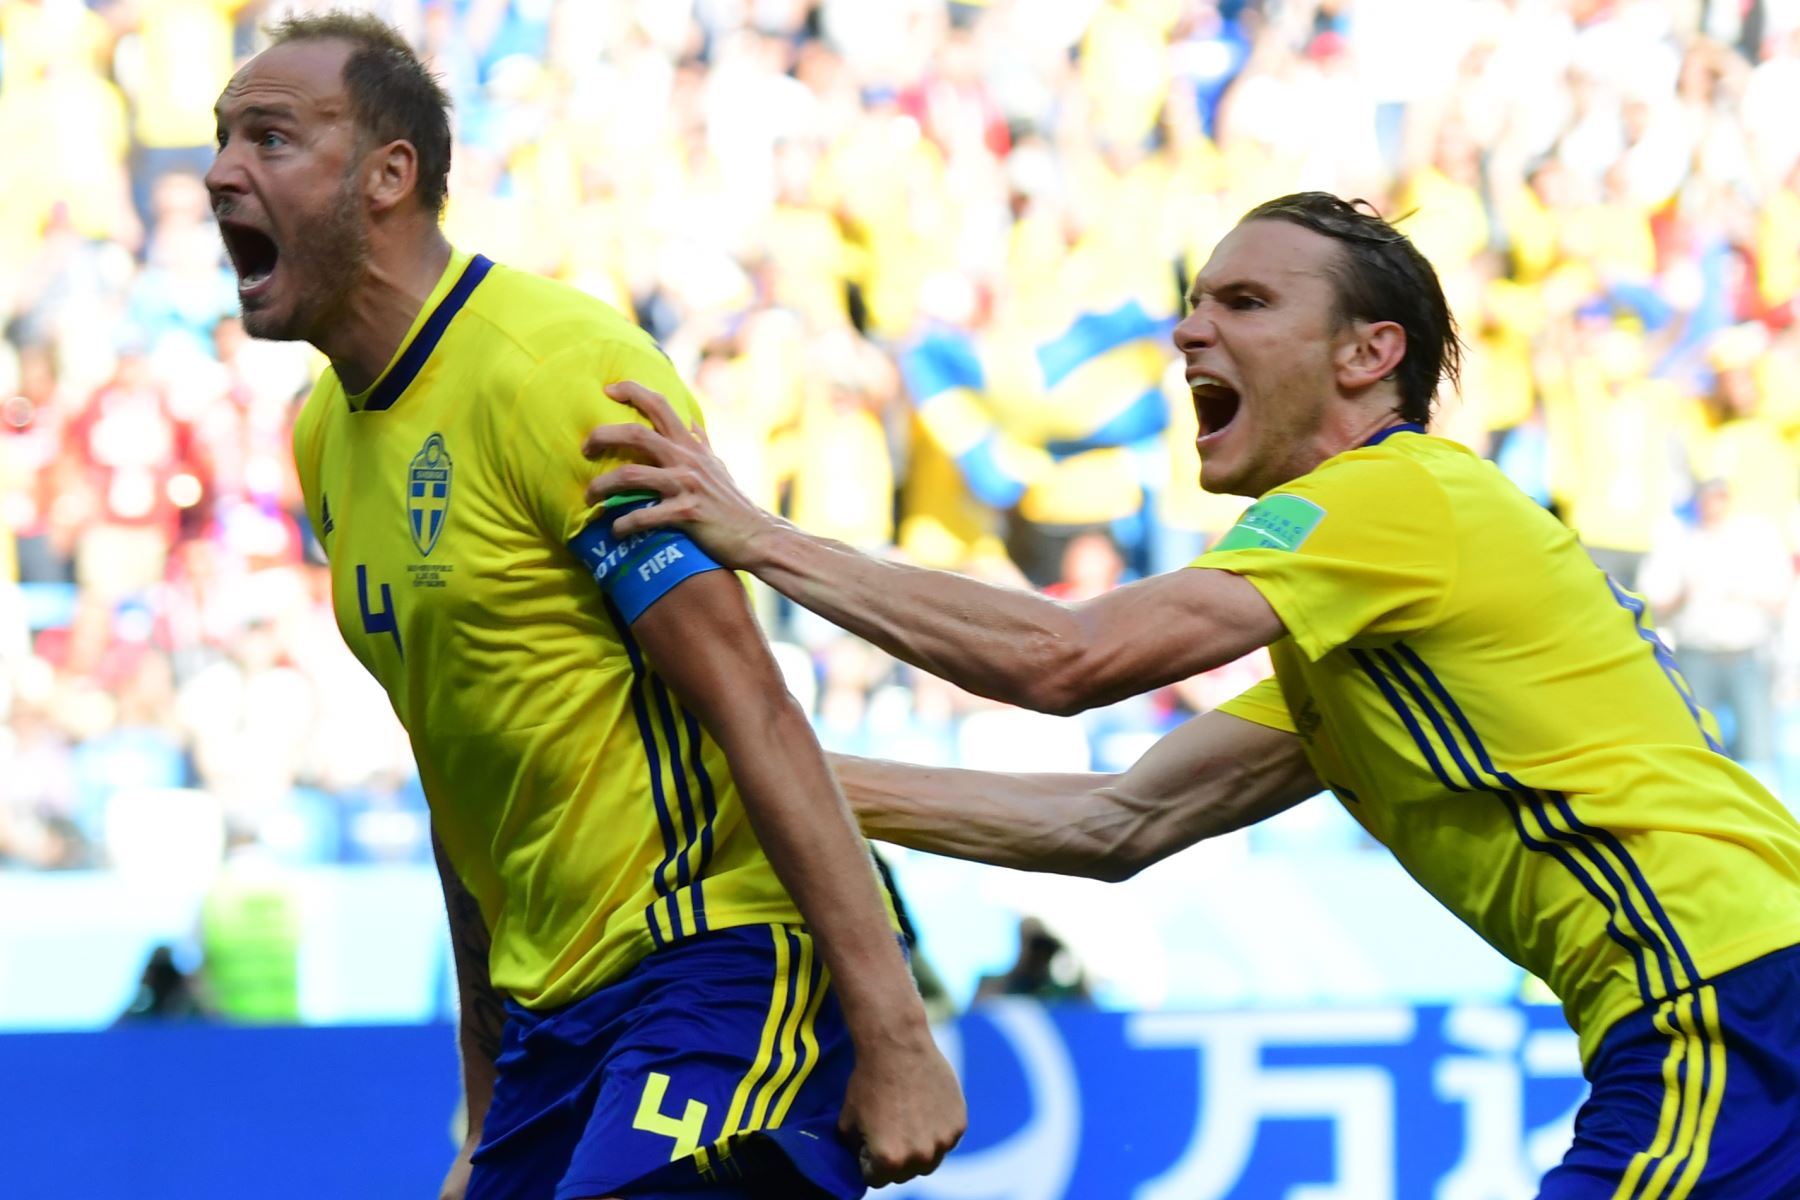 El defensor sueco Andreas Granqvist (L) celebra después de anotar un penal durante el partido de fútbol del Grupo F de la Copa Mundial Rusia 2018 entre Suecia y Corea del Sur en el Estadio Nizhny Novgorod en Nizhny. AFP